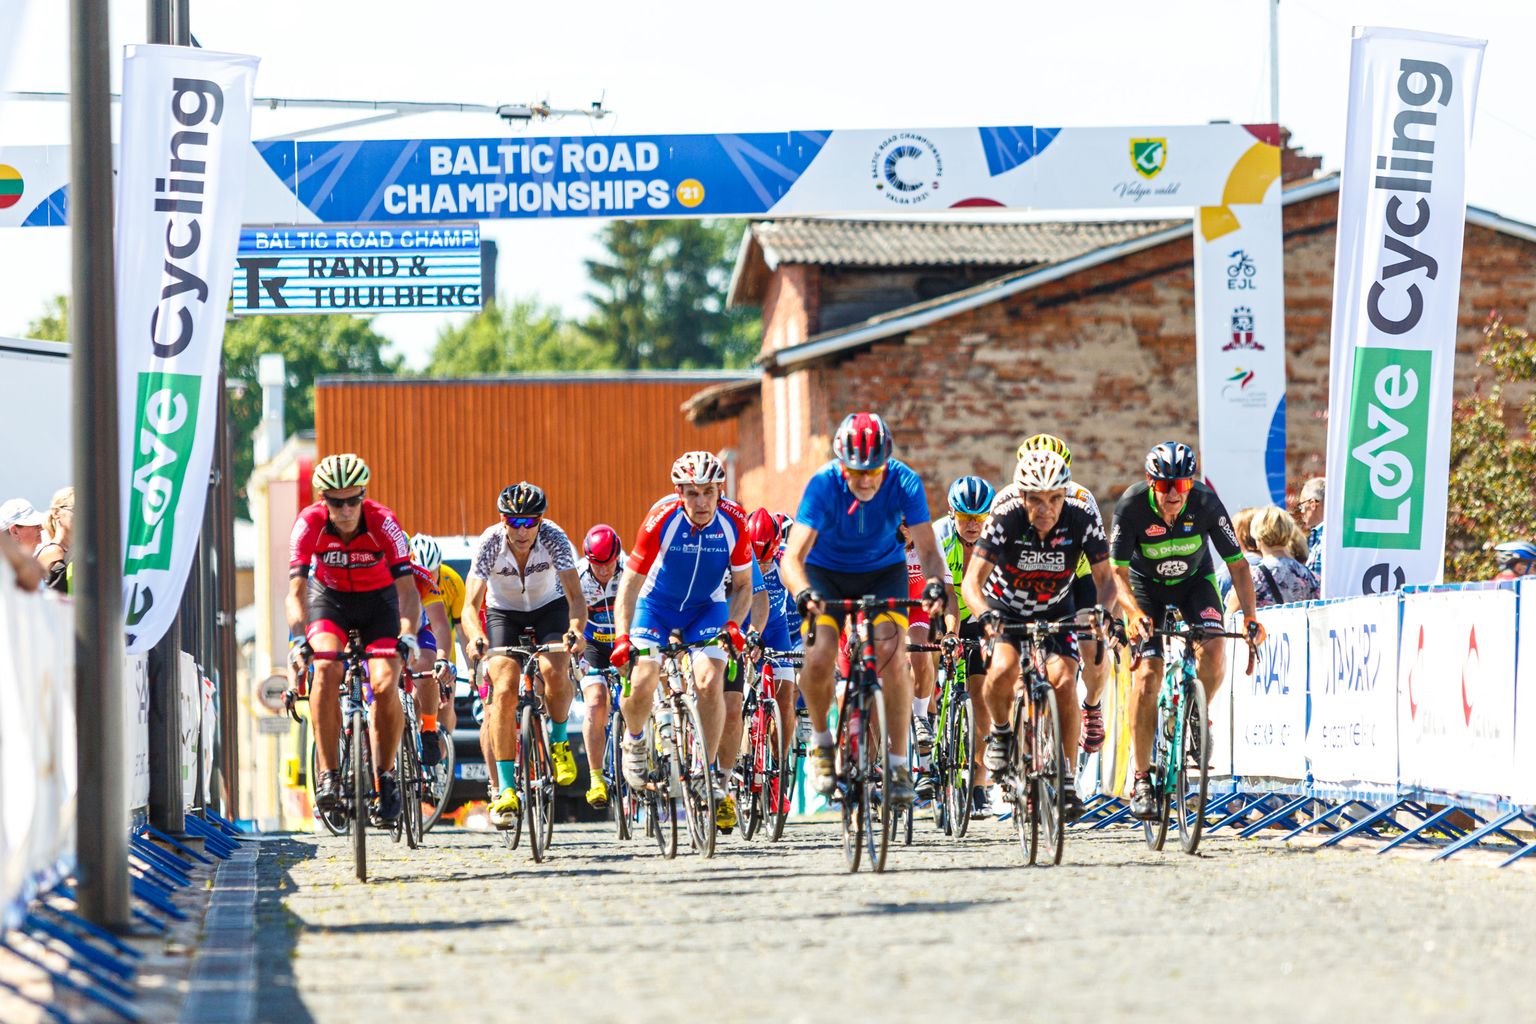 Balti riikide ühised maanteerattasõidu meistrivõistlused Baltic Road Championships 2021.